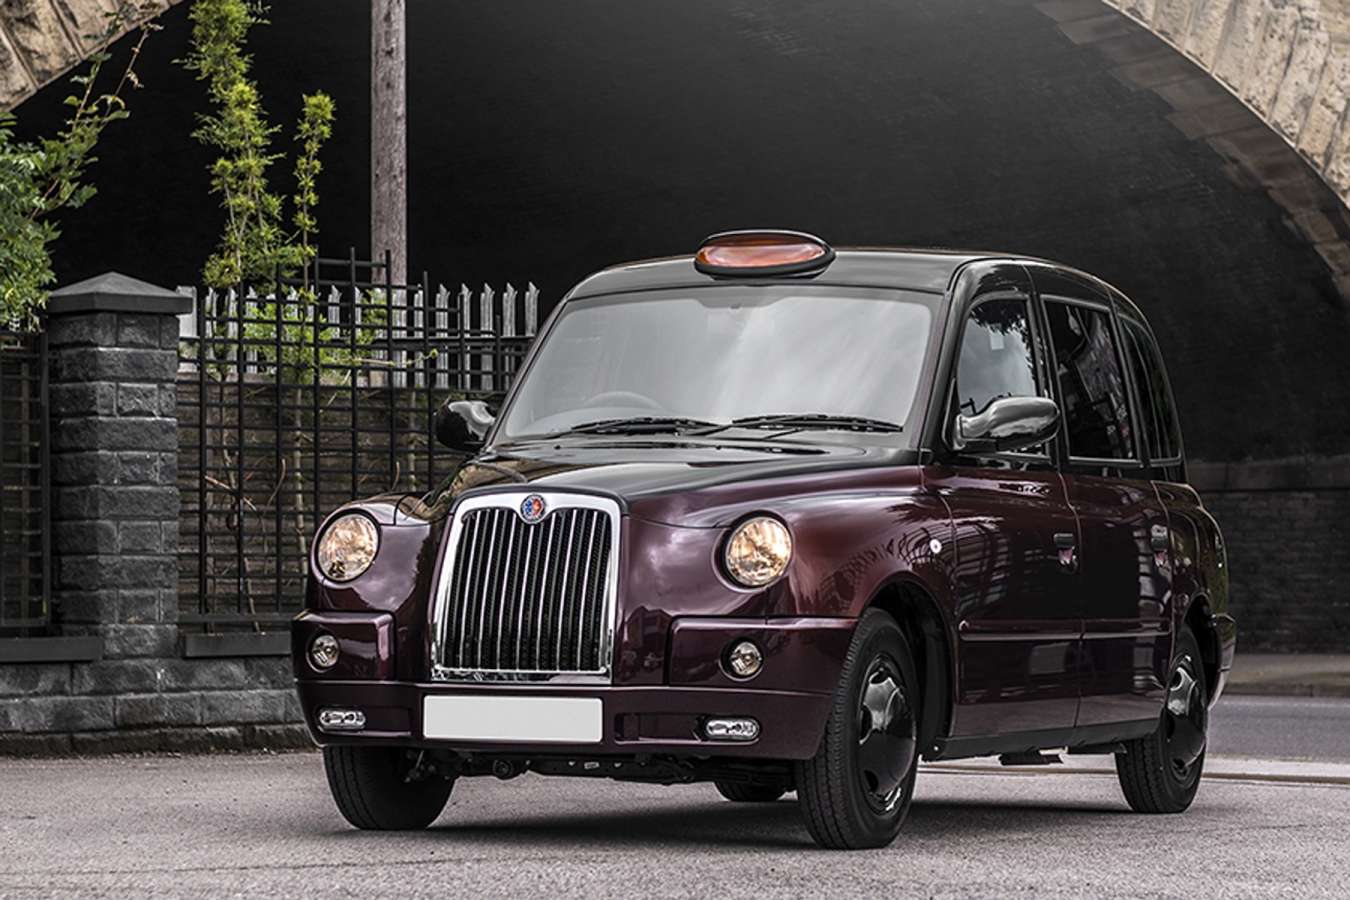 Un taxi a Londres modifié façon Rolls Royce au royaume uni1 - Un taxi a Londres modifié façon Rolls-Royce au royaume uni!